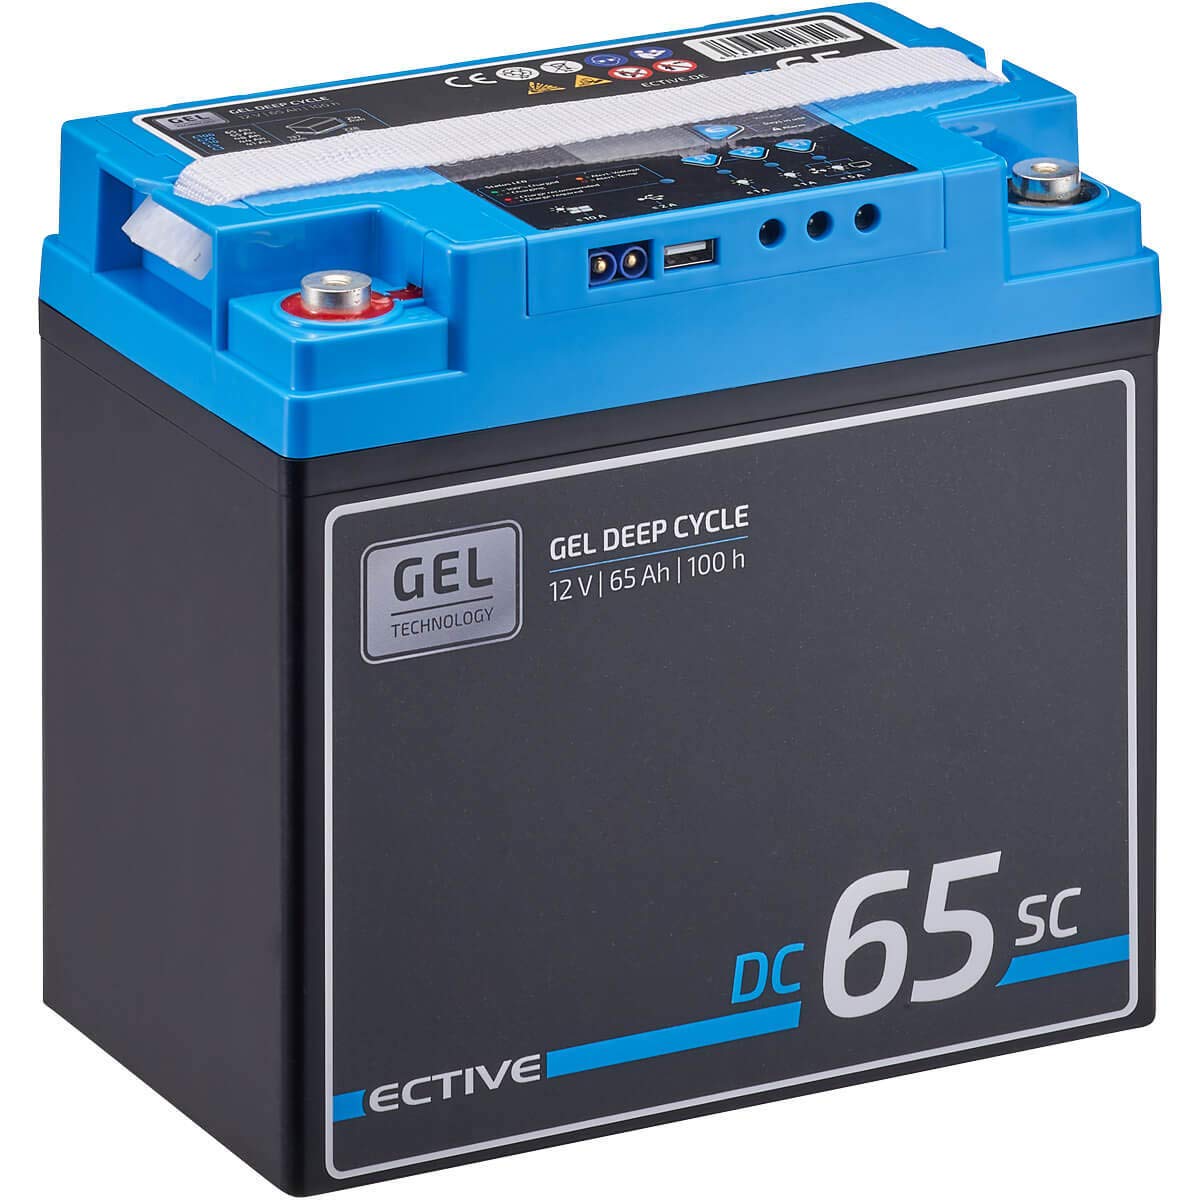 ECTIVE GEL Batterie DC65SC - 12V, 65Ah, mit PWM-Solarladeregler, Nachfüllpacks, LCD-Display - Deep Cycle VRLA Versorgungsbatterie, Solarbatterie, Bootsbatterie, Starterbatterie für Wohnwagen, Camper von ECTIVE